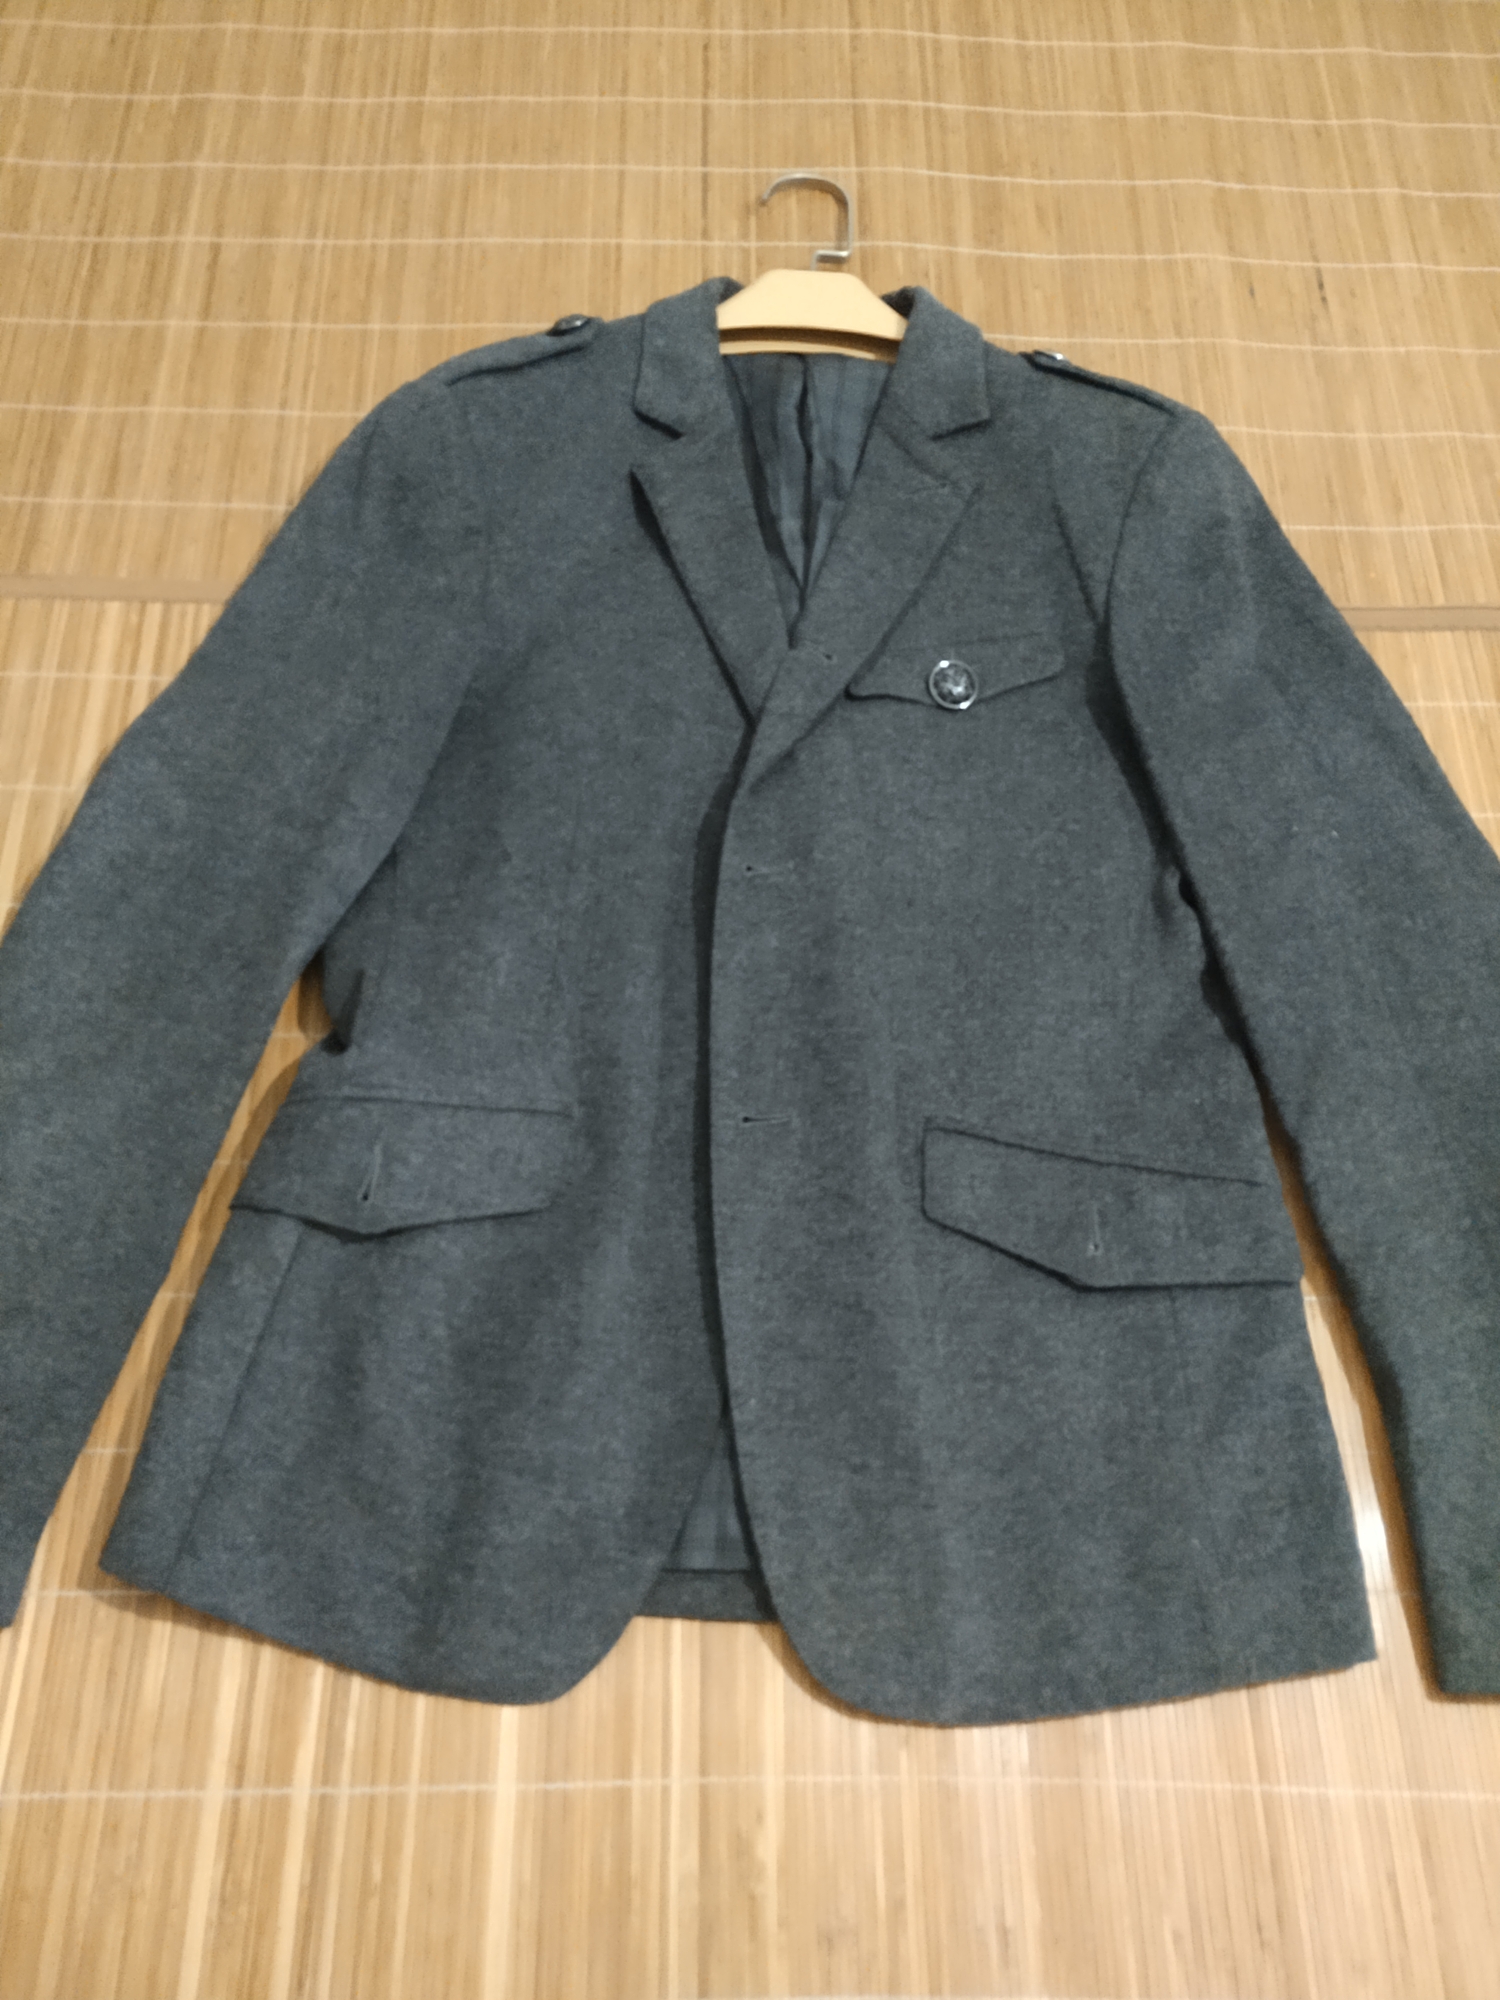 断舍离，爱登堡男士休闲外套，购于爱登堡实体专柜，版型超正，含